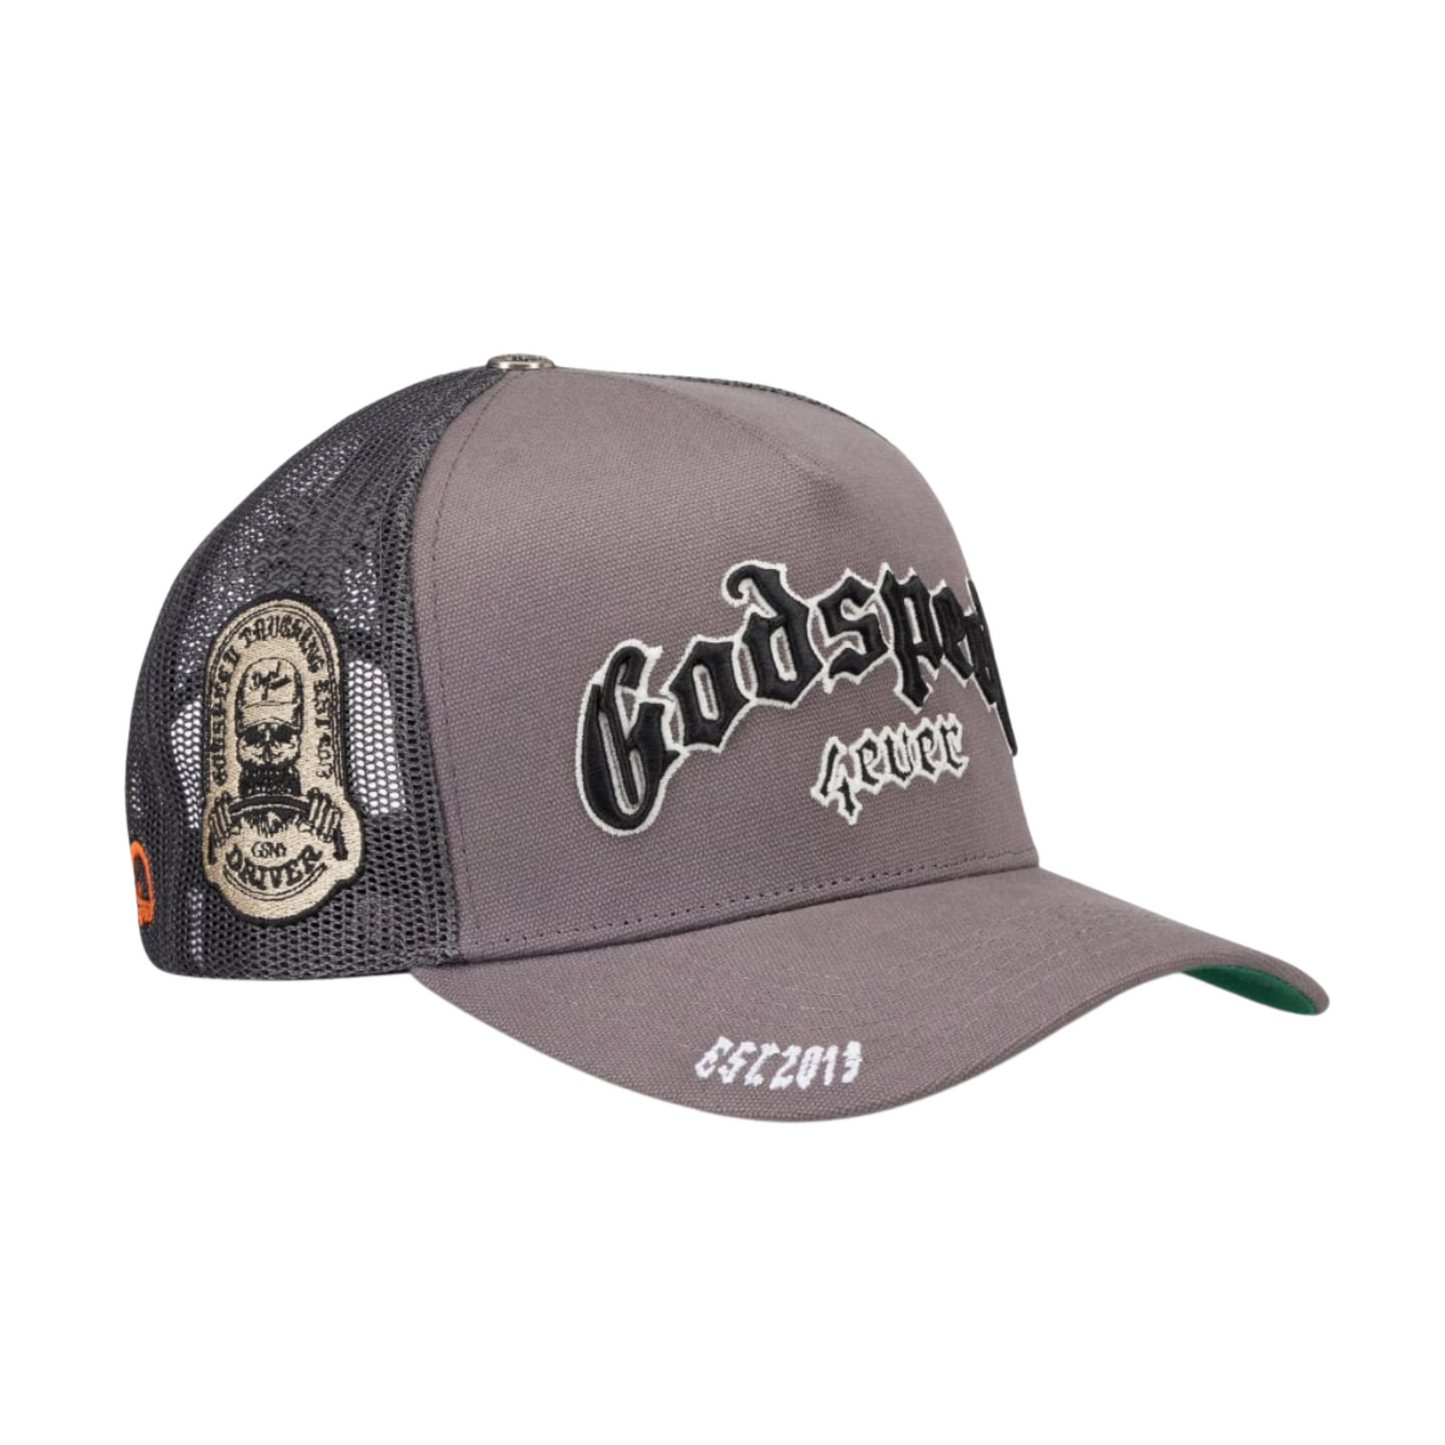 Godspeed Forever Trucker Hat (Smoke)